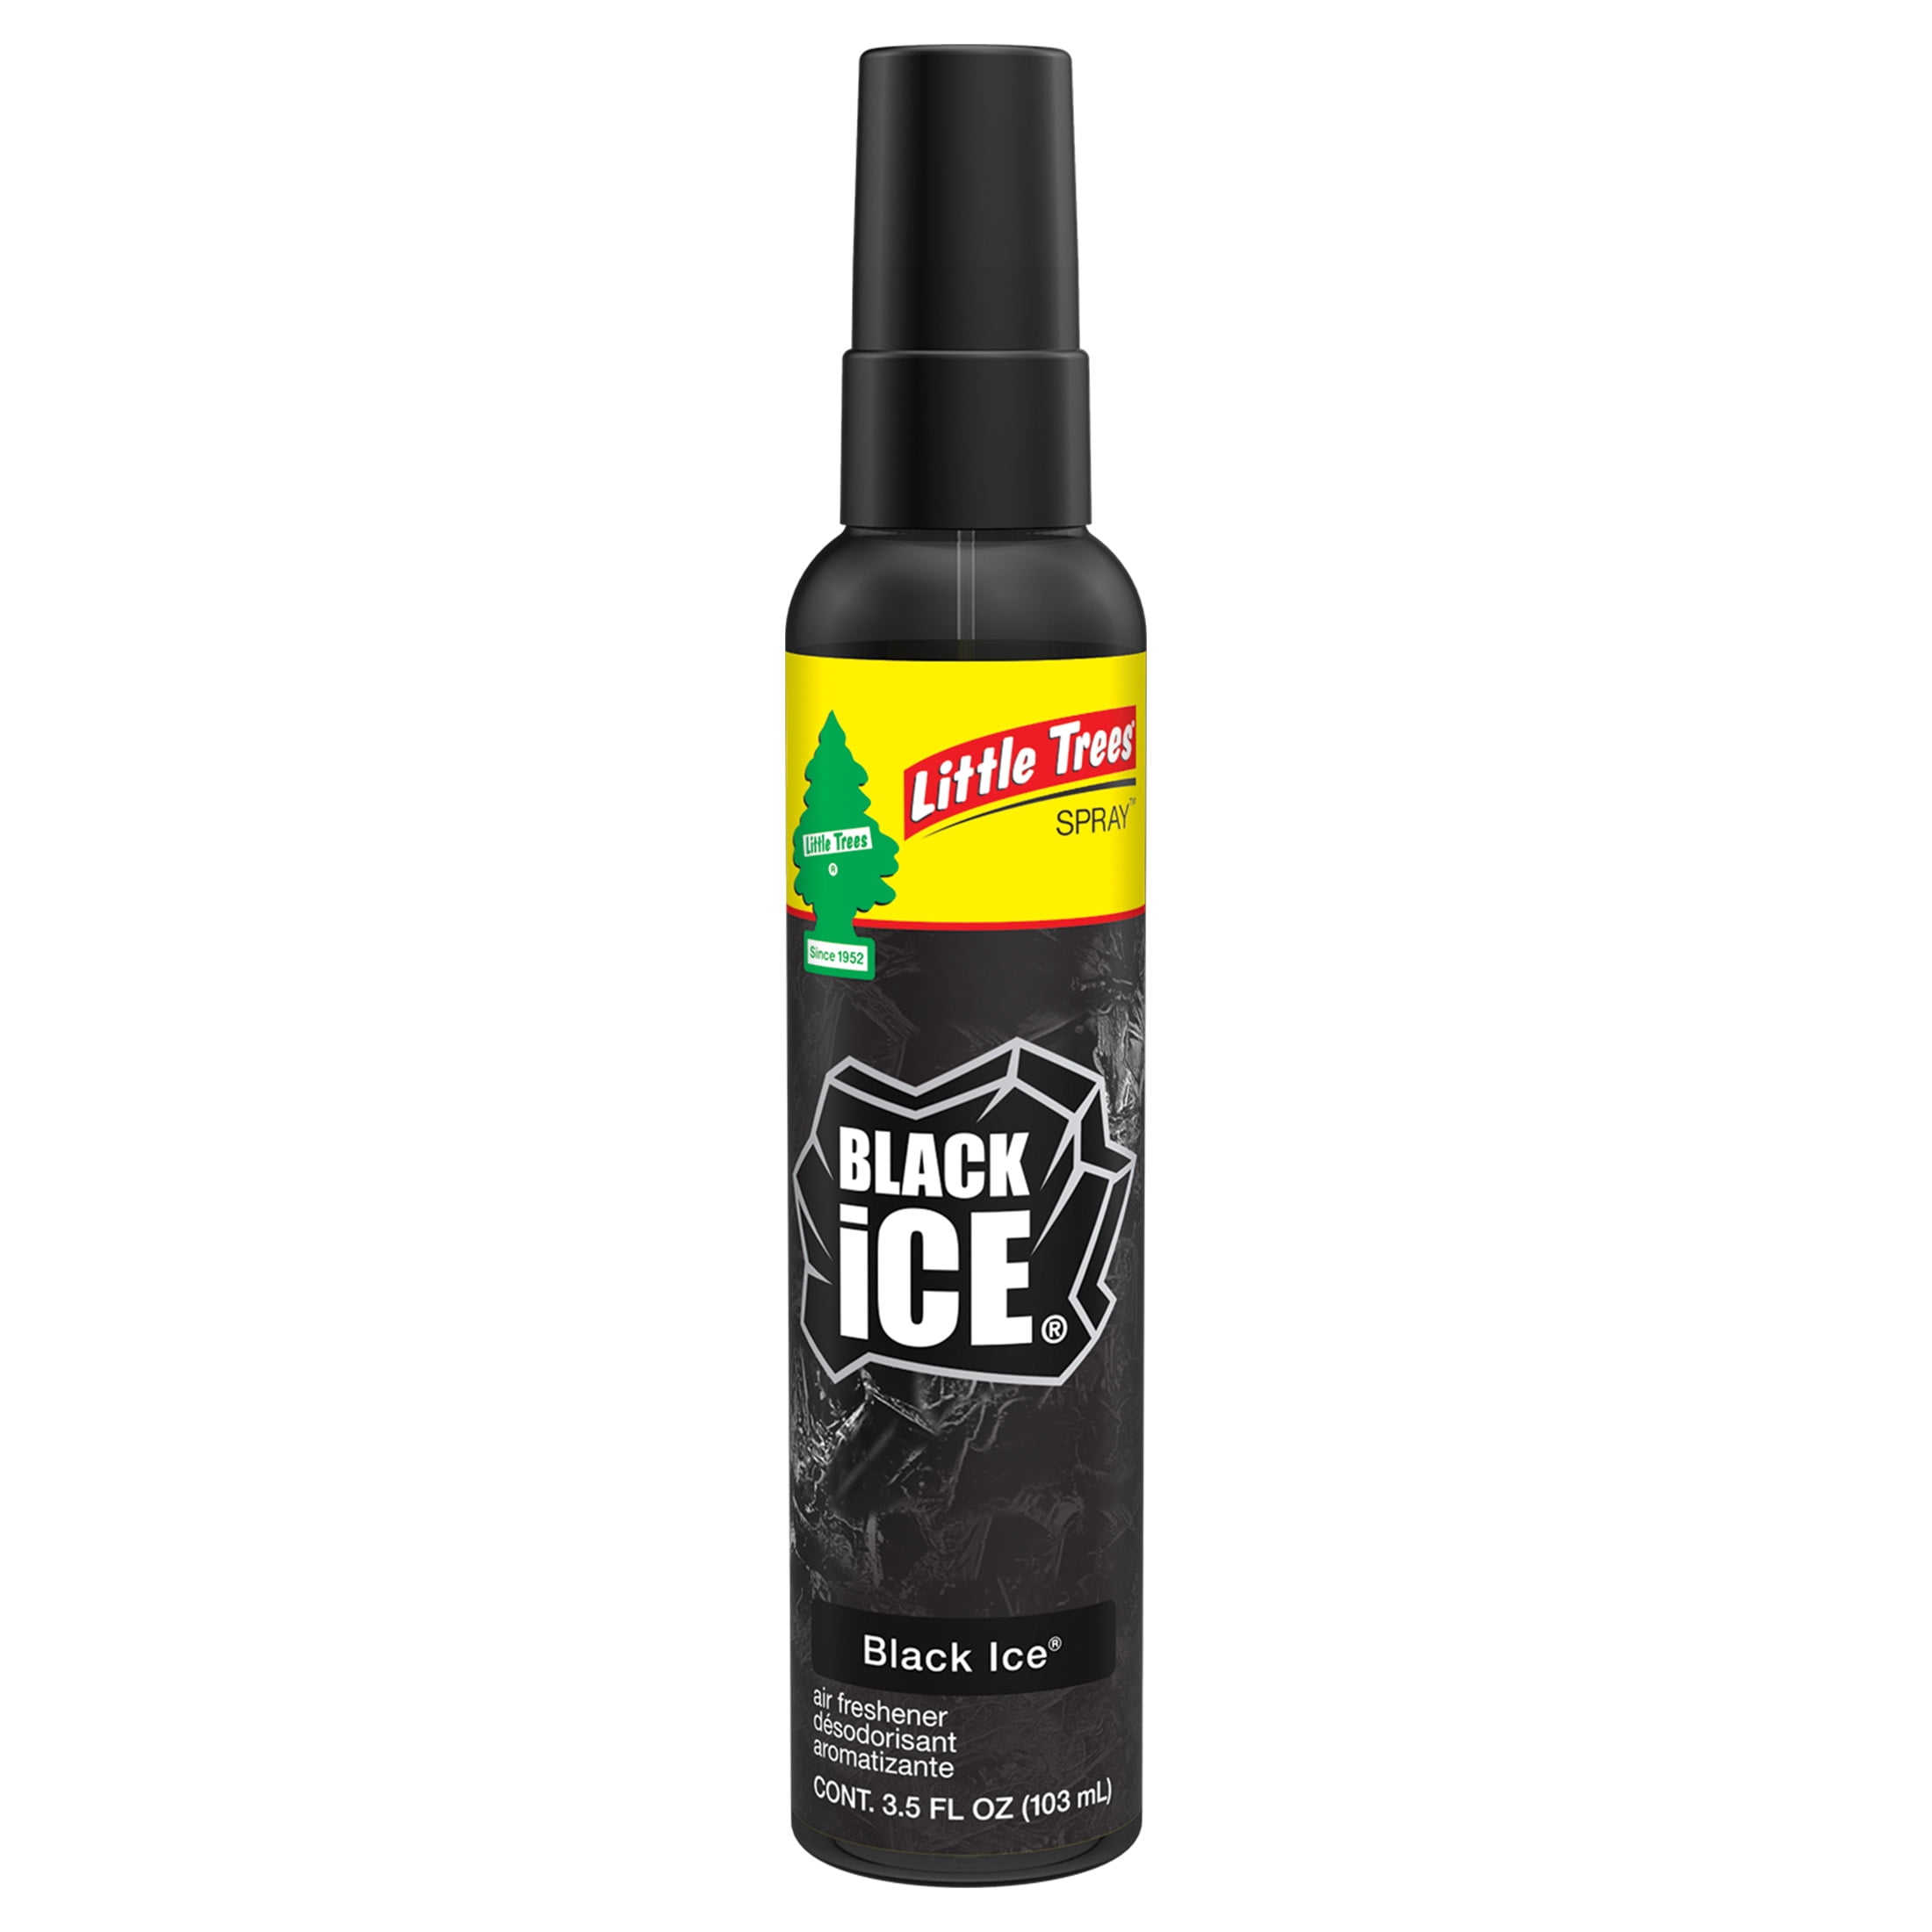 Little Trees Air Freshener Spray Black Ice 3.5 oz Bottle